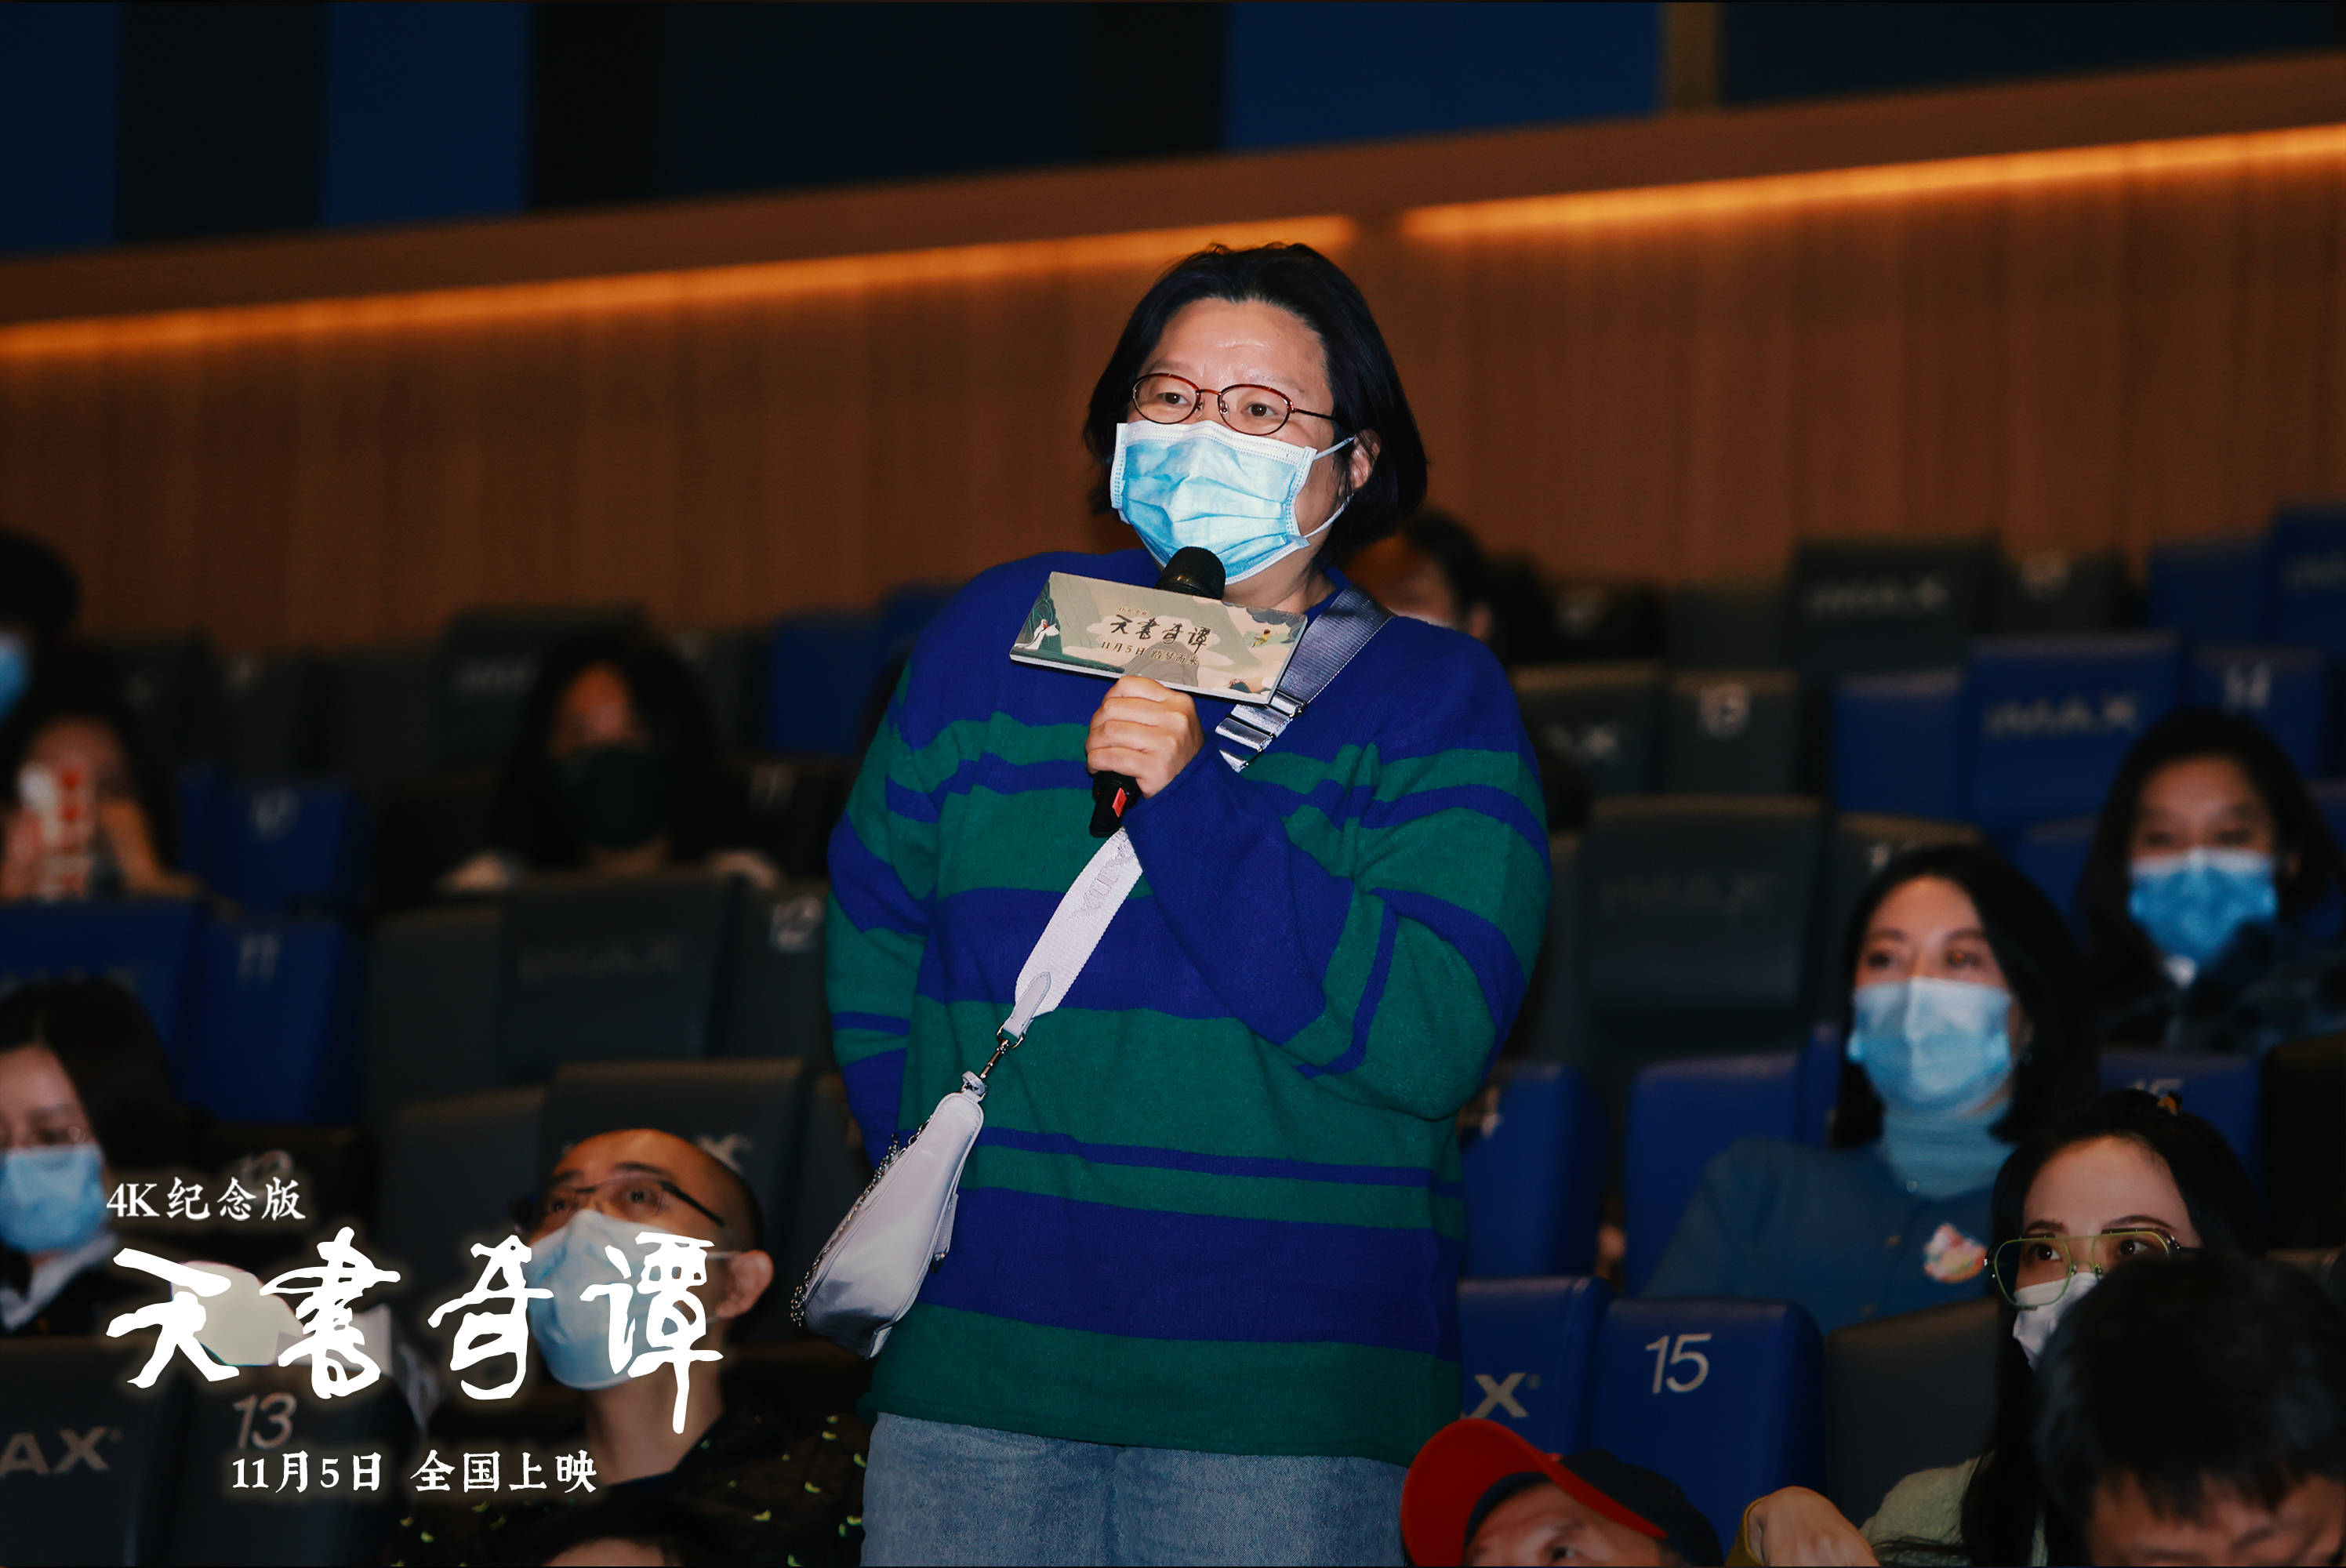 经典动画《天书奇谭》4K修复纪念版在北京首映